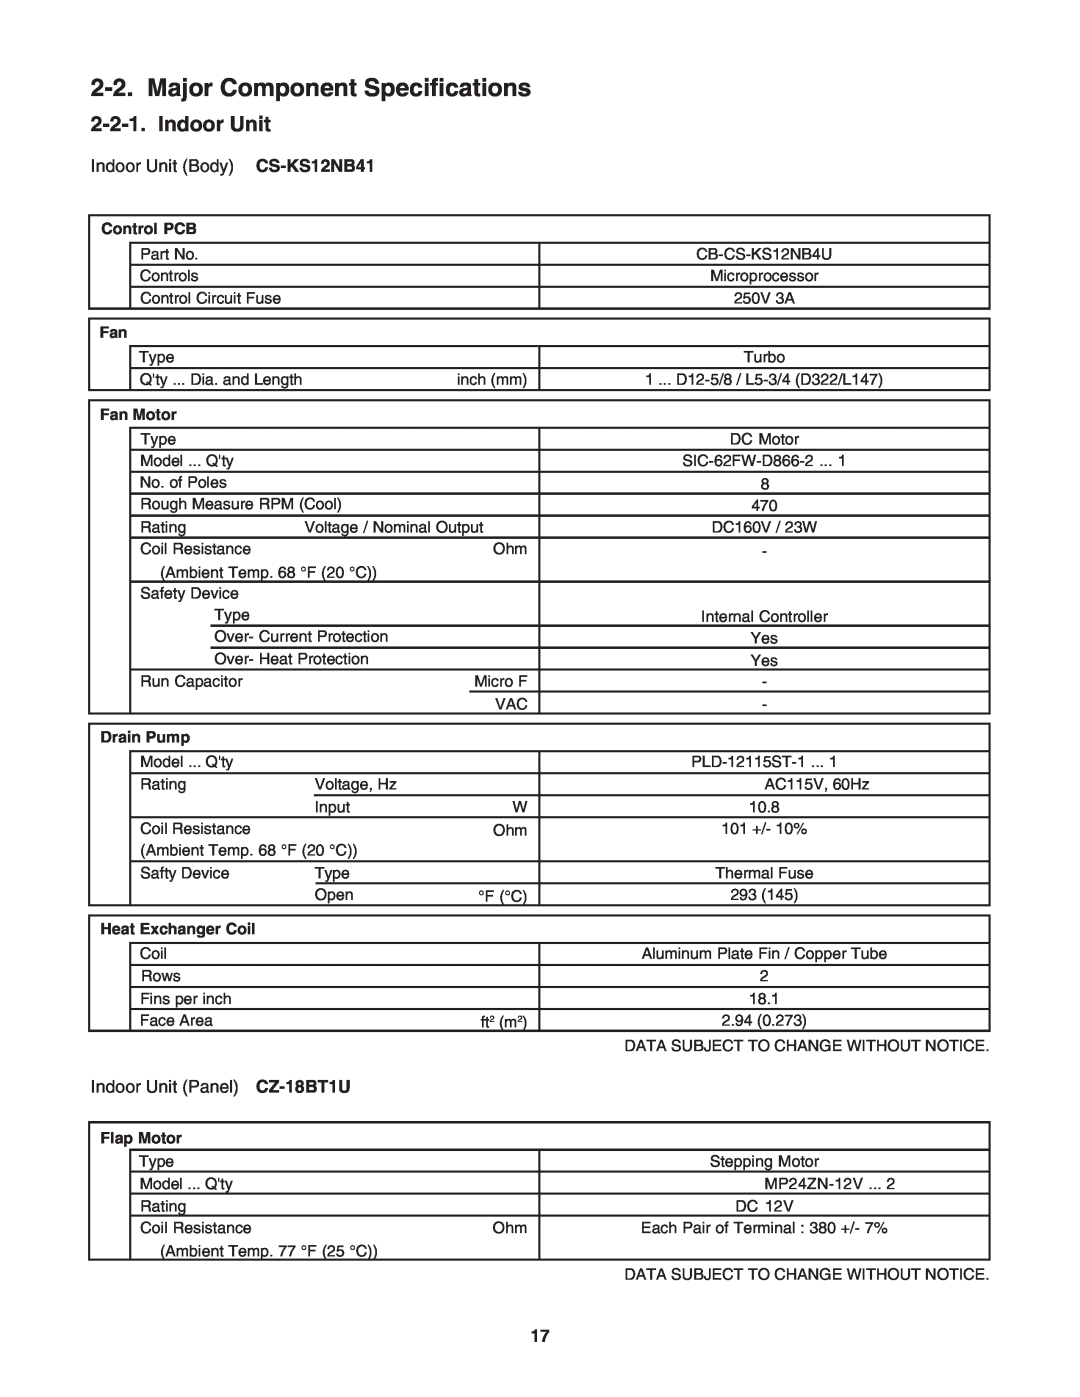 Panasonic CZ-18BT1U + CU-KS18NKUA Major Component Specifications, Indoor Unit, Control PCB, Fan Motor, Drain Pump 